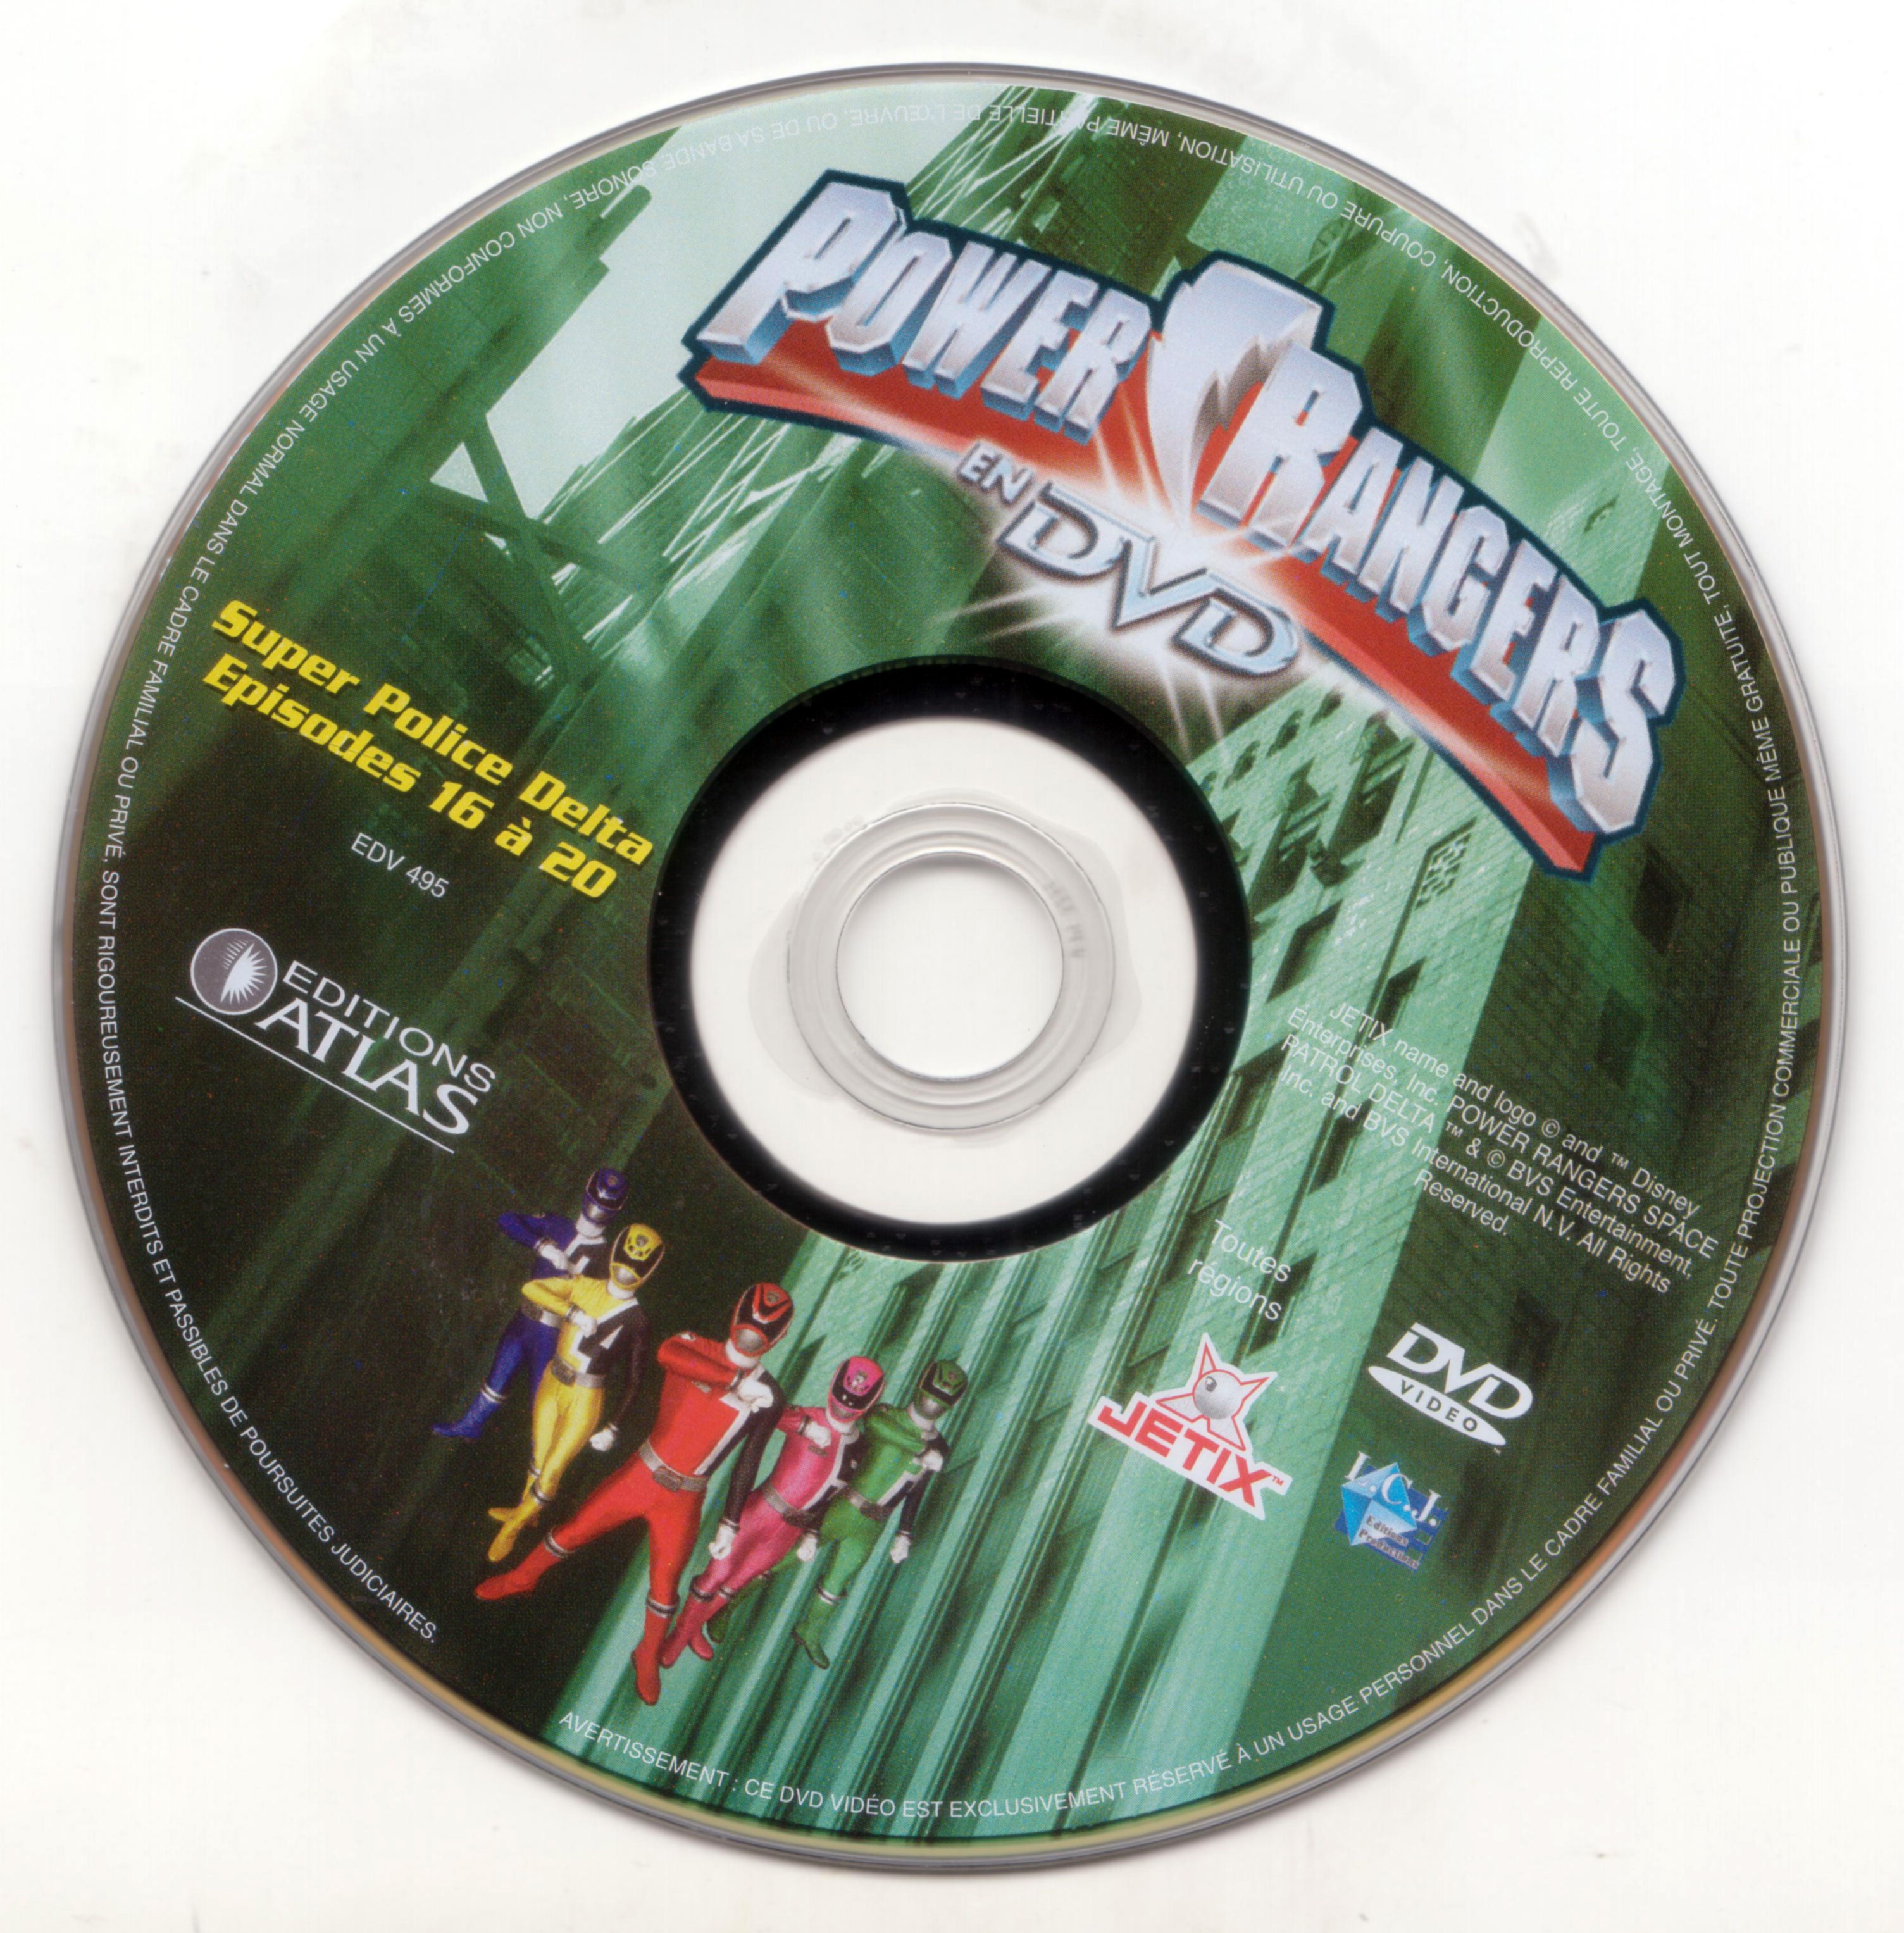 Power rangers DVD 4 (Ed Atlas)